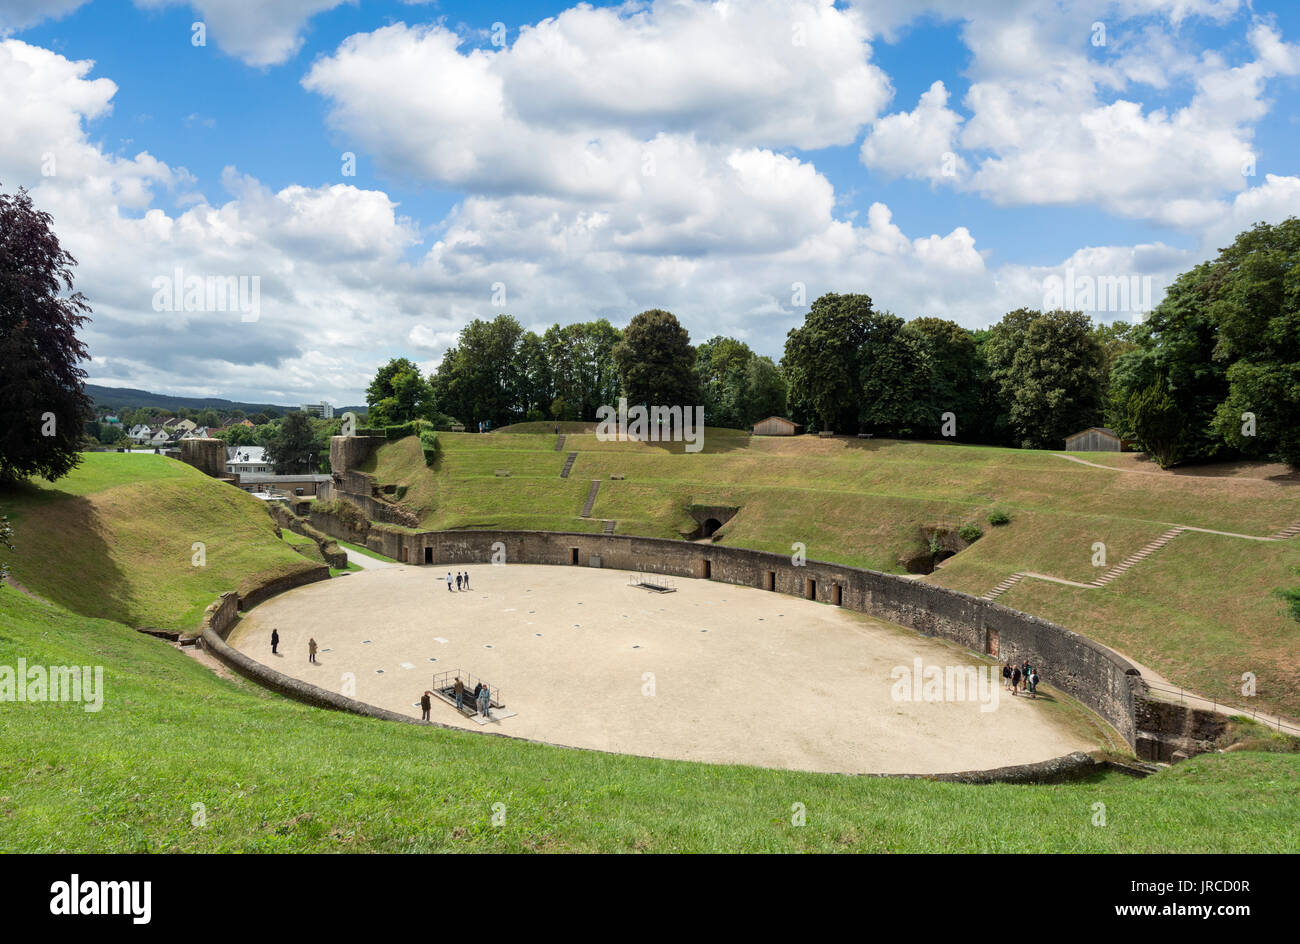 L'Amphithéâtre Romain de Trèves, datant d'environ 100 AD, Rhénanie-Palatinat, Allemagne Banque D'Images